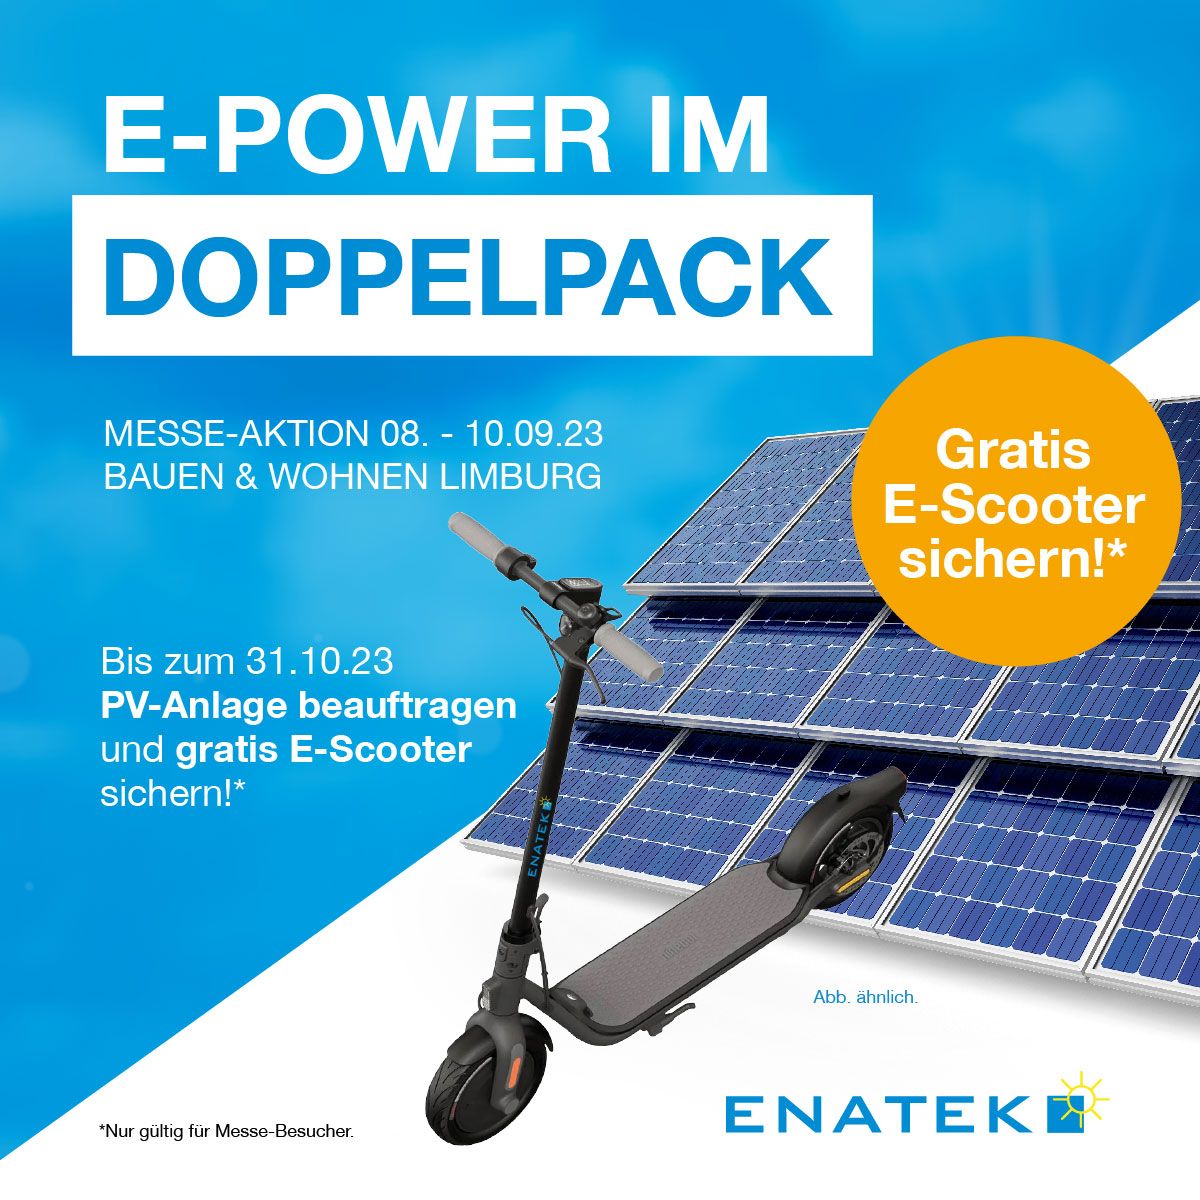 E-Power im Doppelpack - ENATEK Messe-Aktion zur "Bauen & Wohnen" 2023